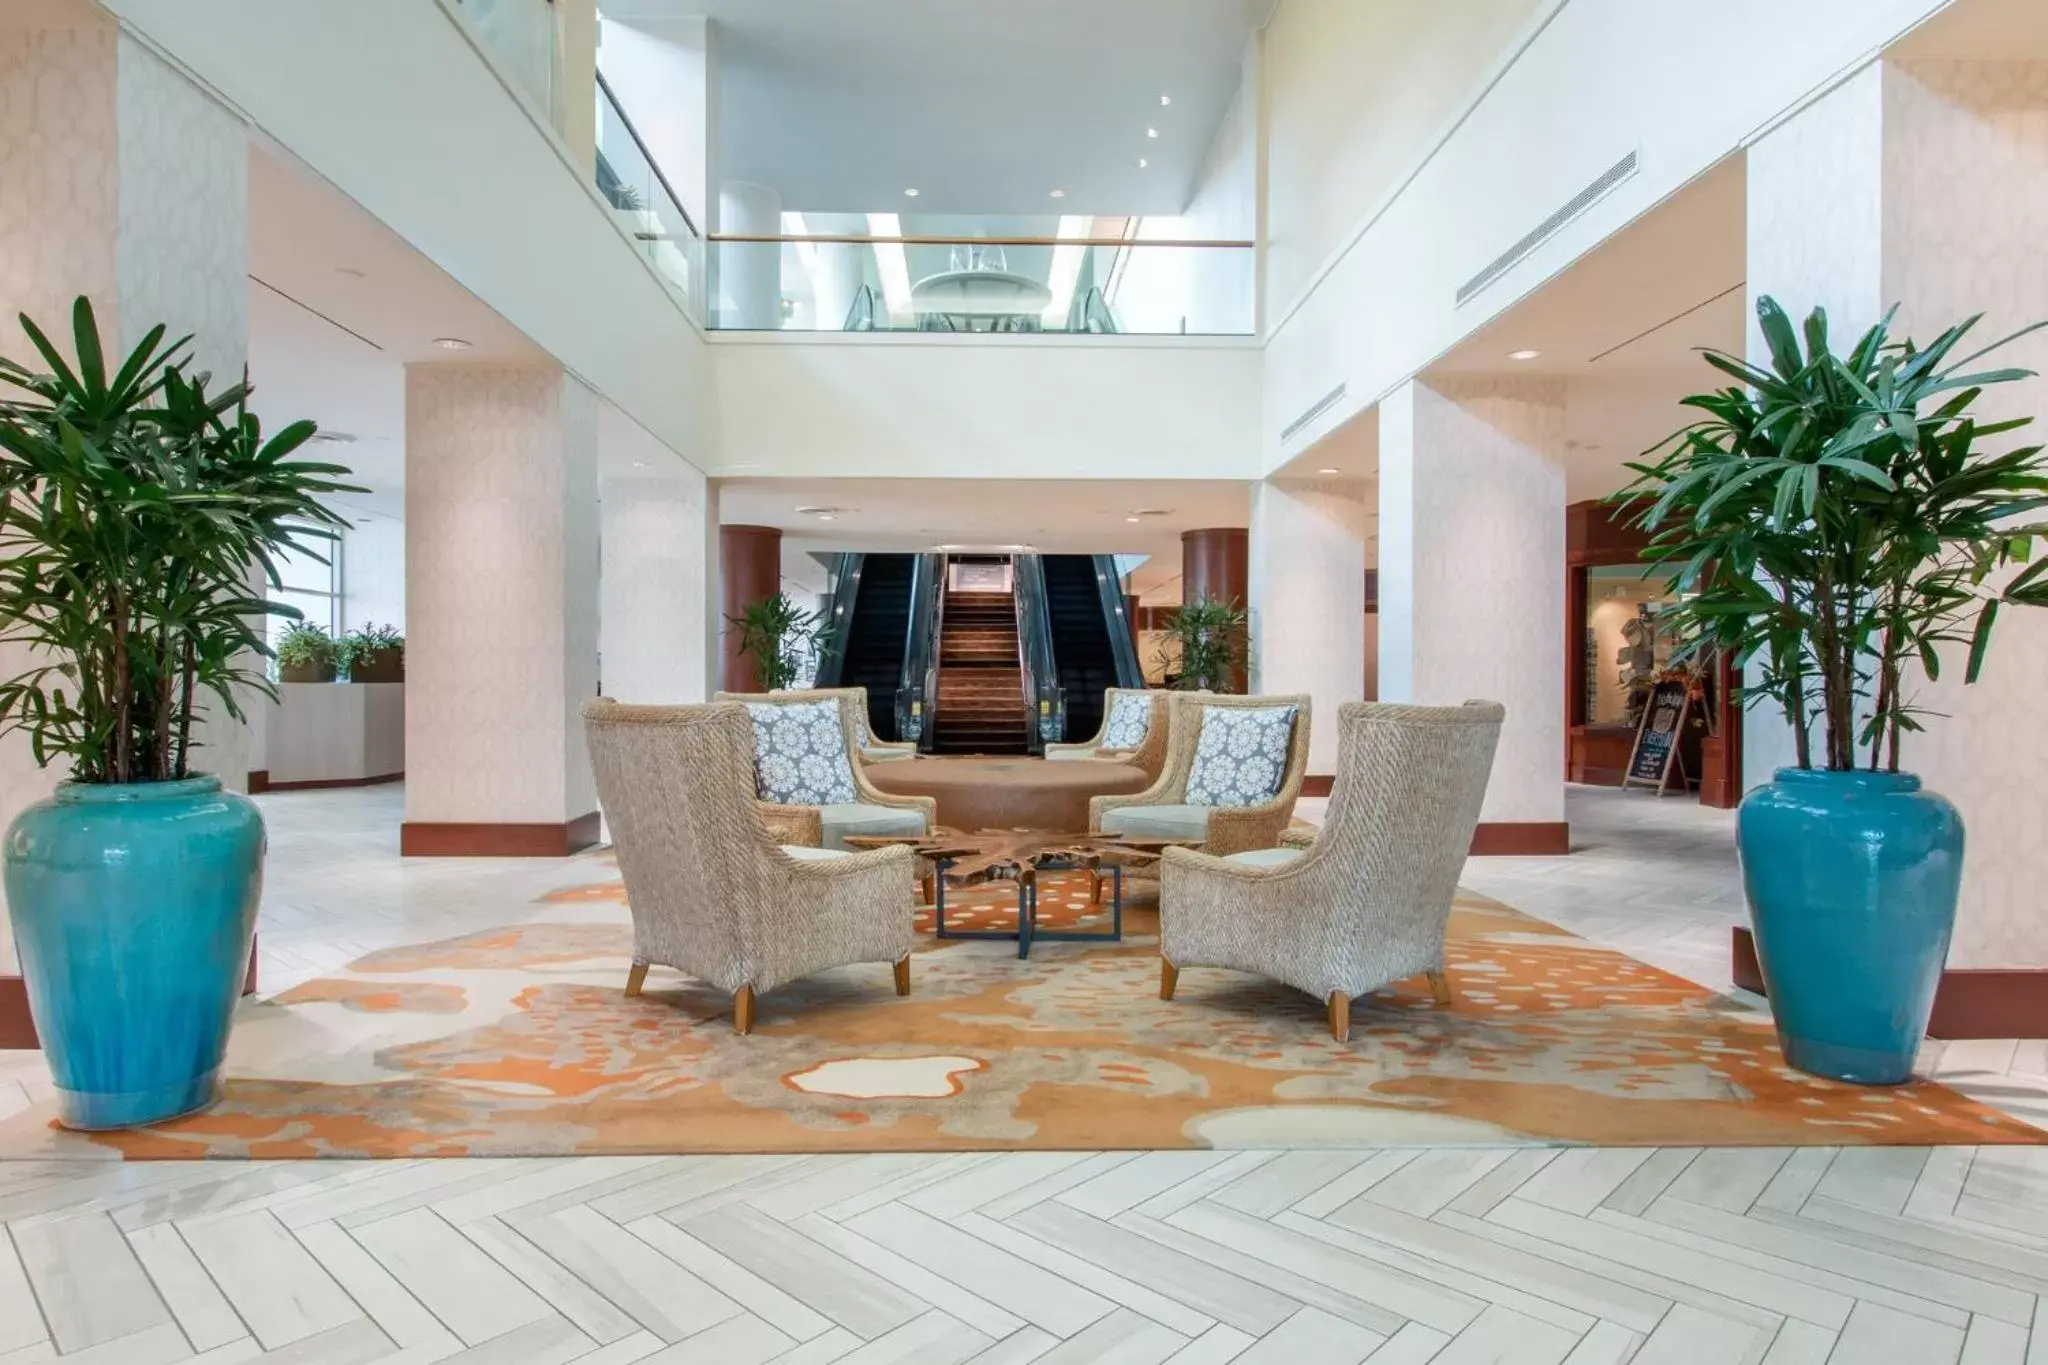 Lobby or reception, Lobby/Reception in Omni Corpus Christi Hotel